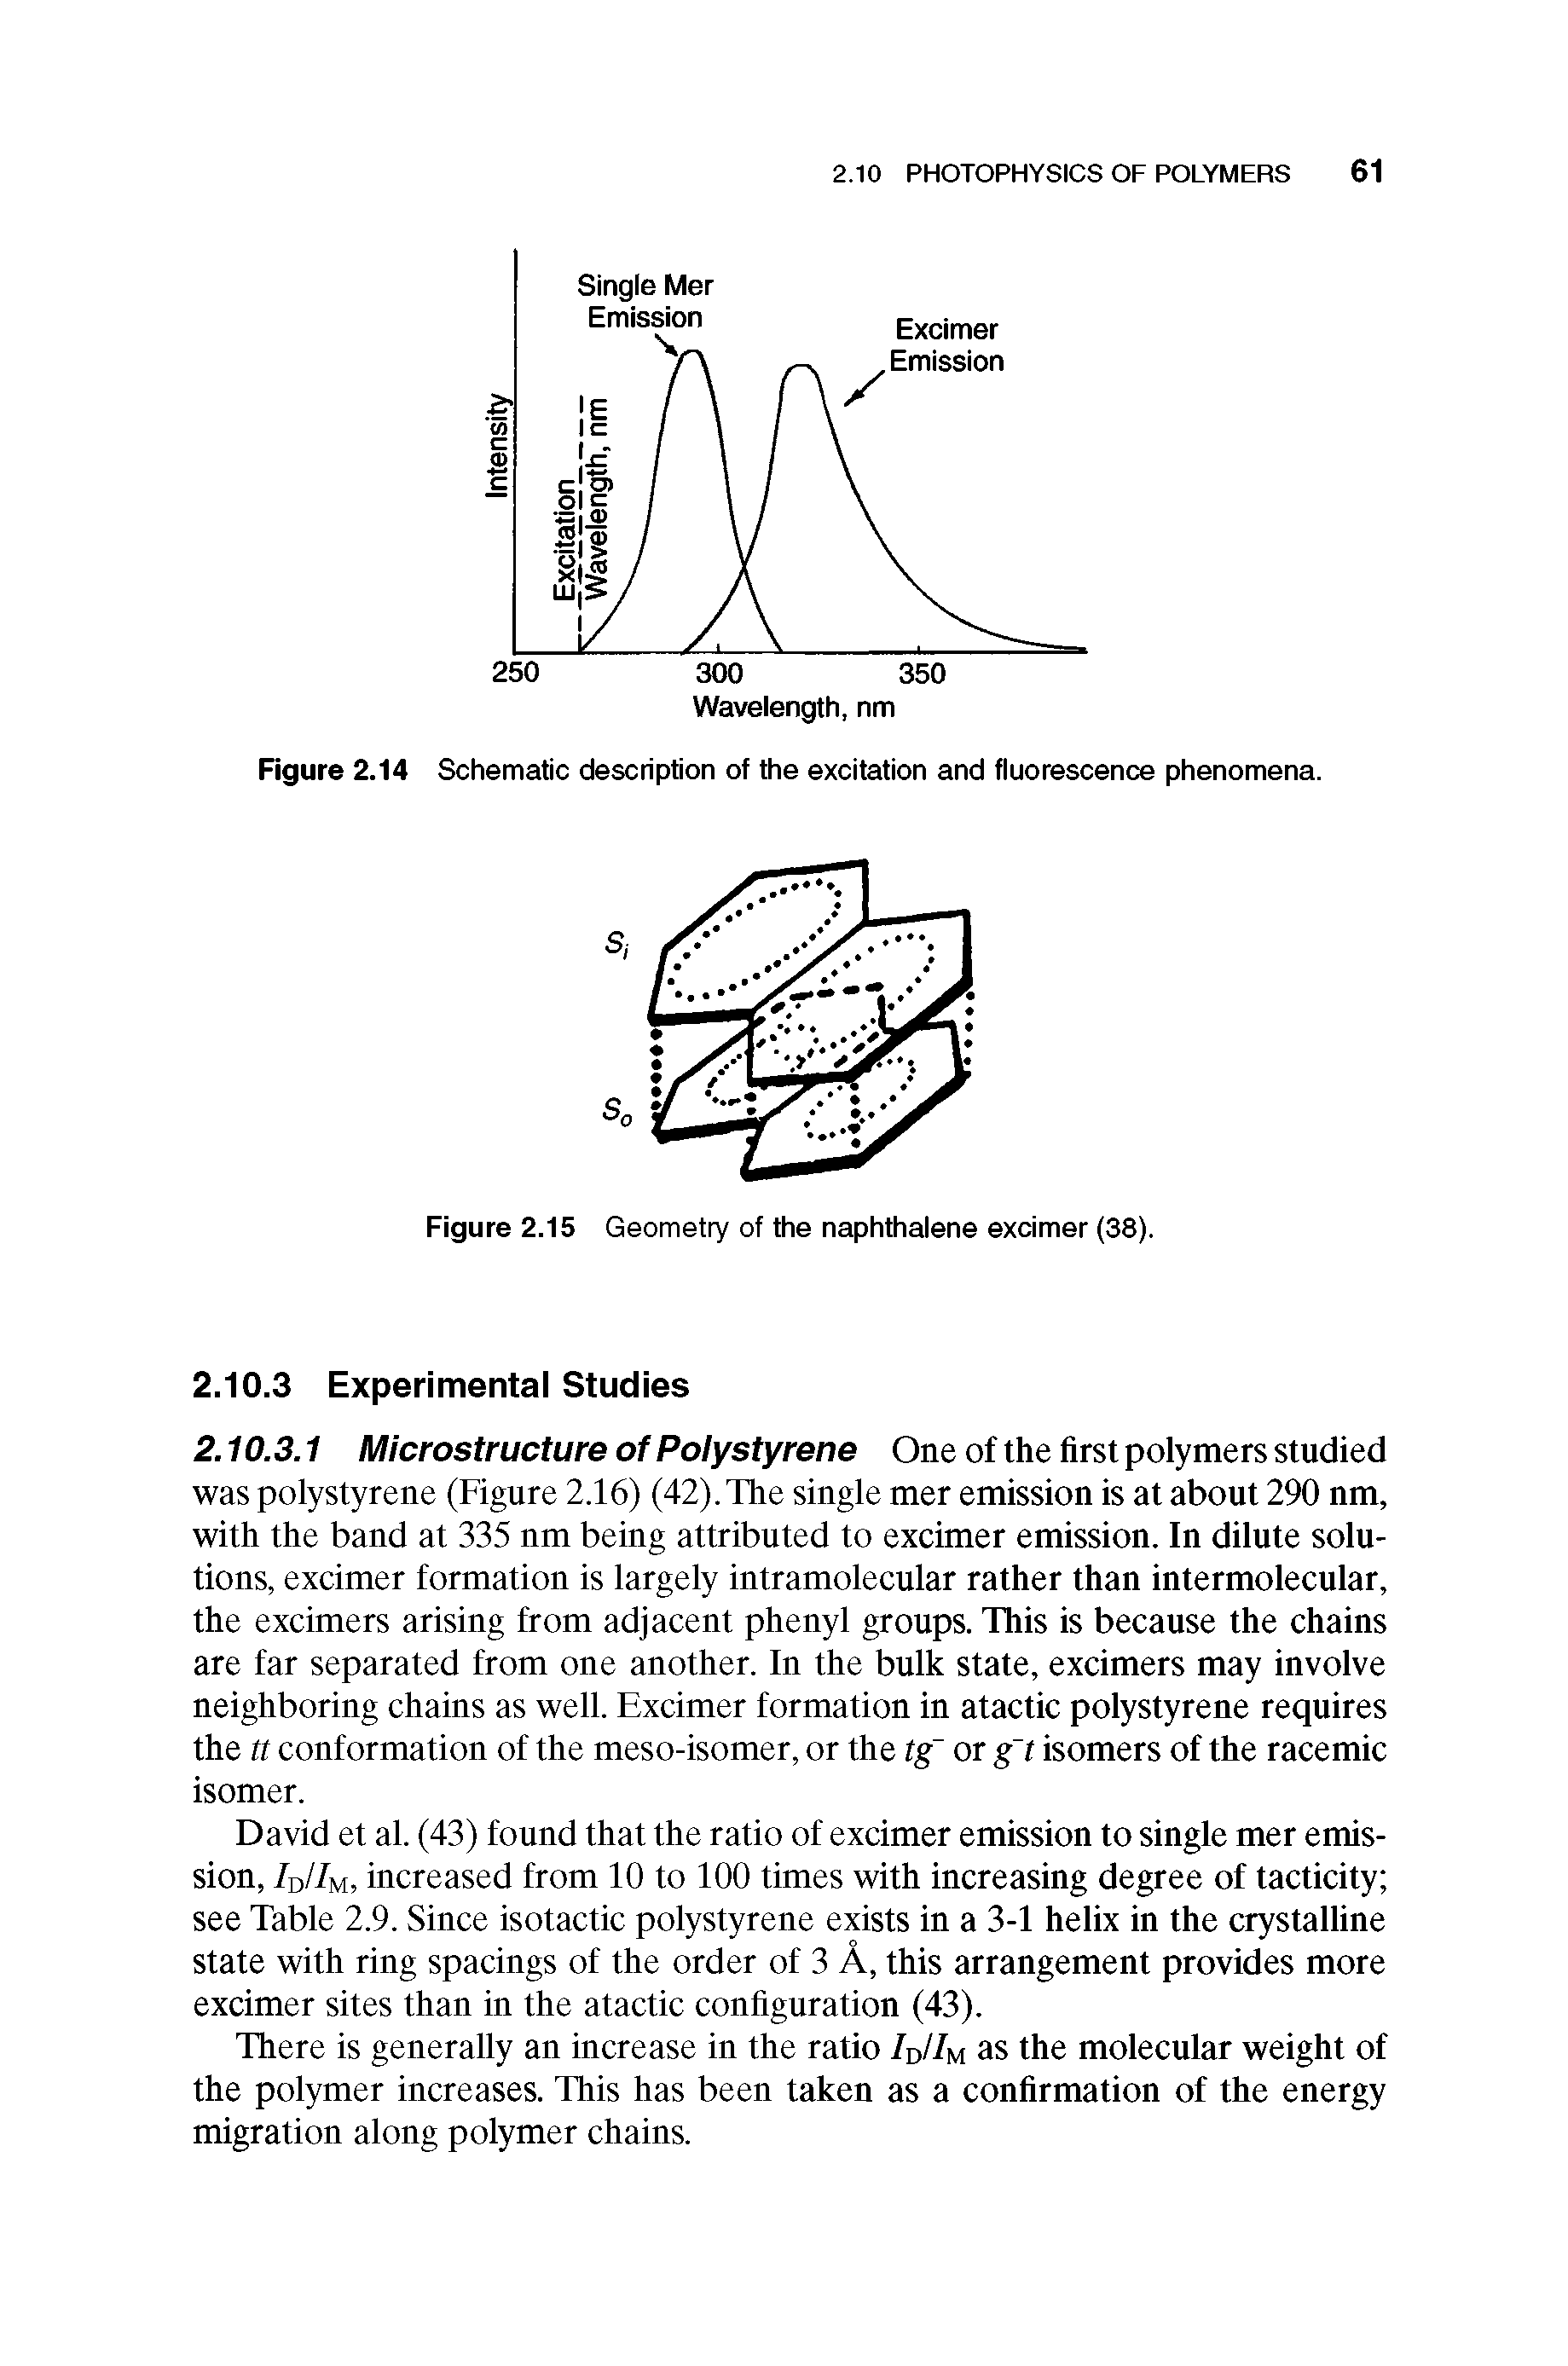 Figure 2.14 Schematic description of the excitation and fluorescence phenomena.